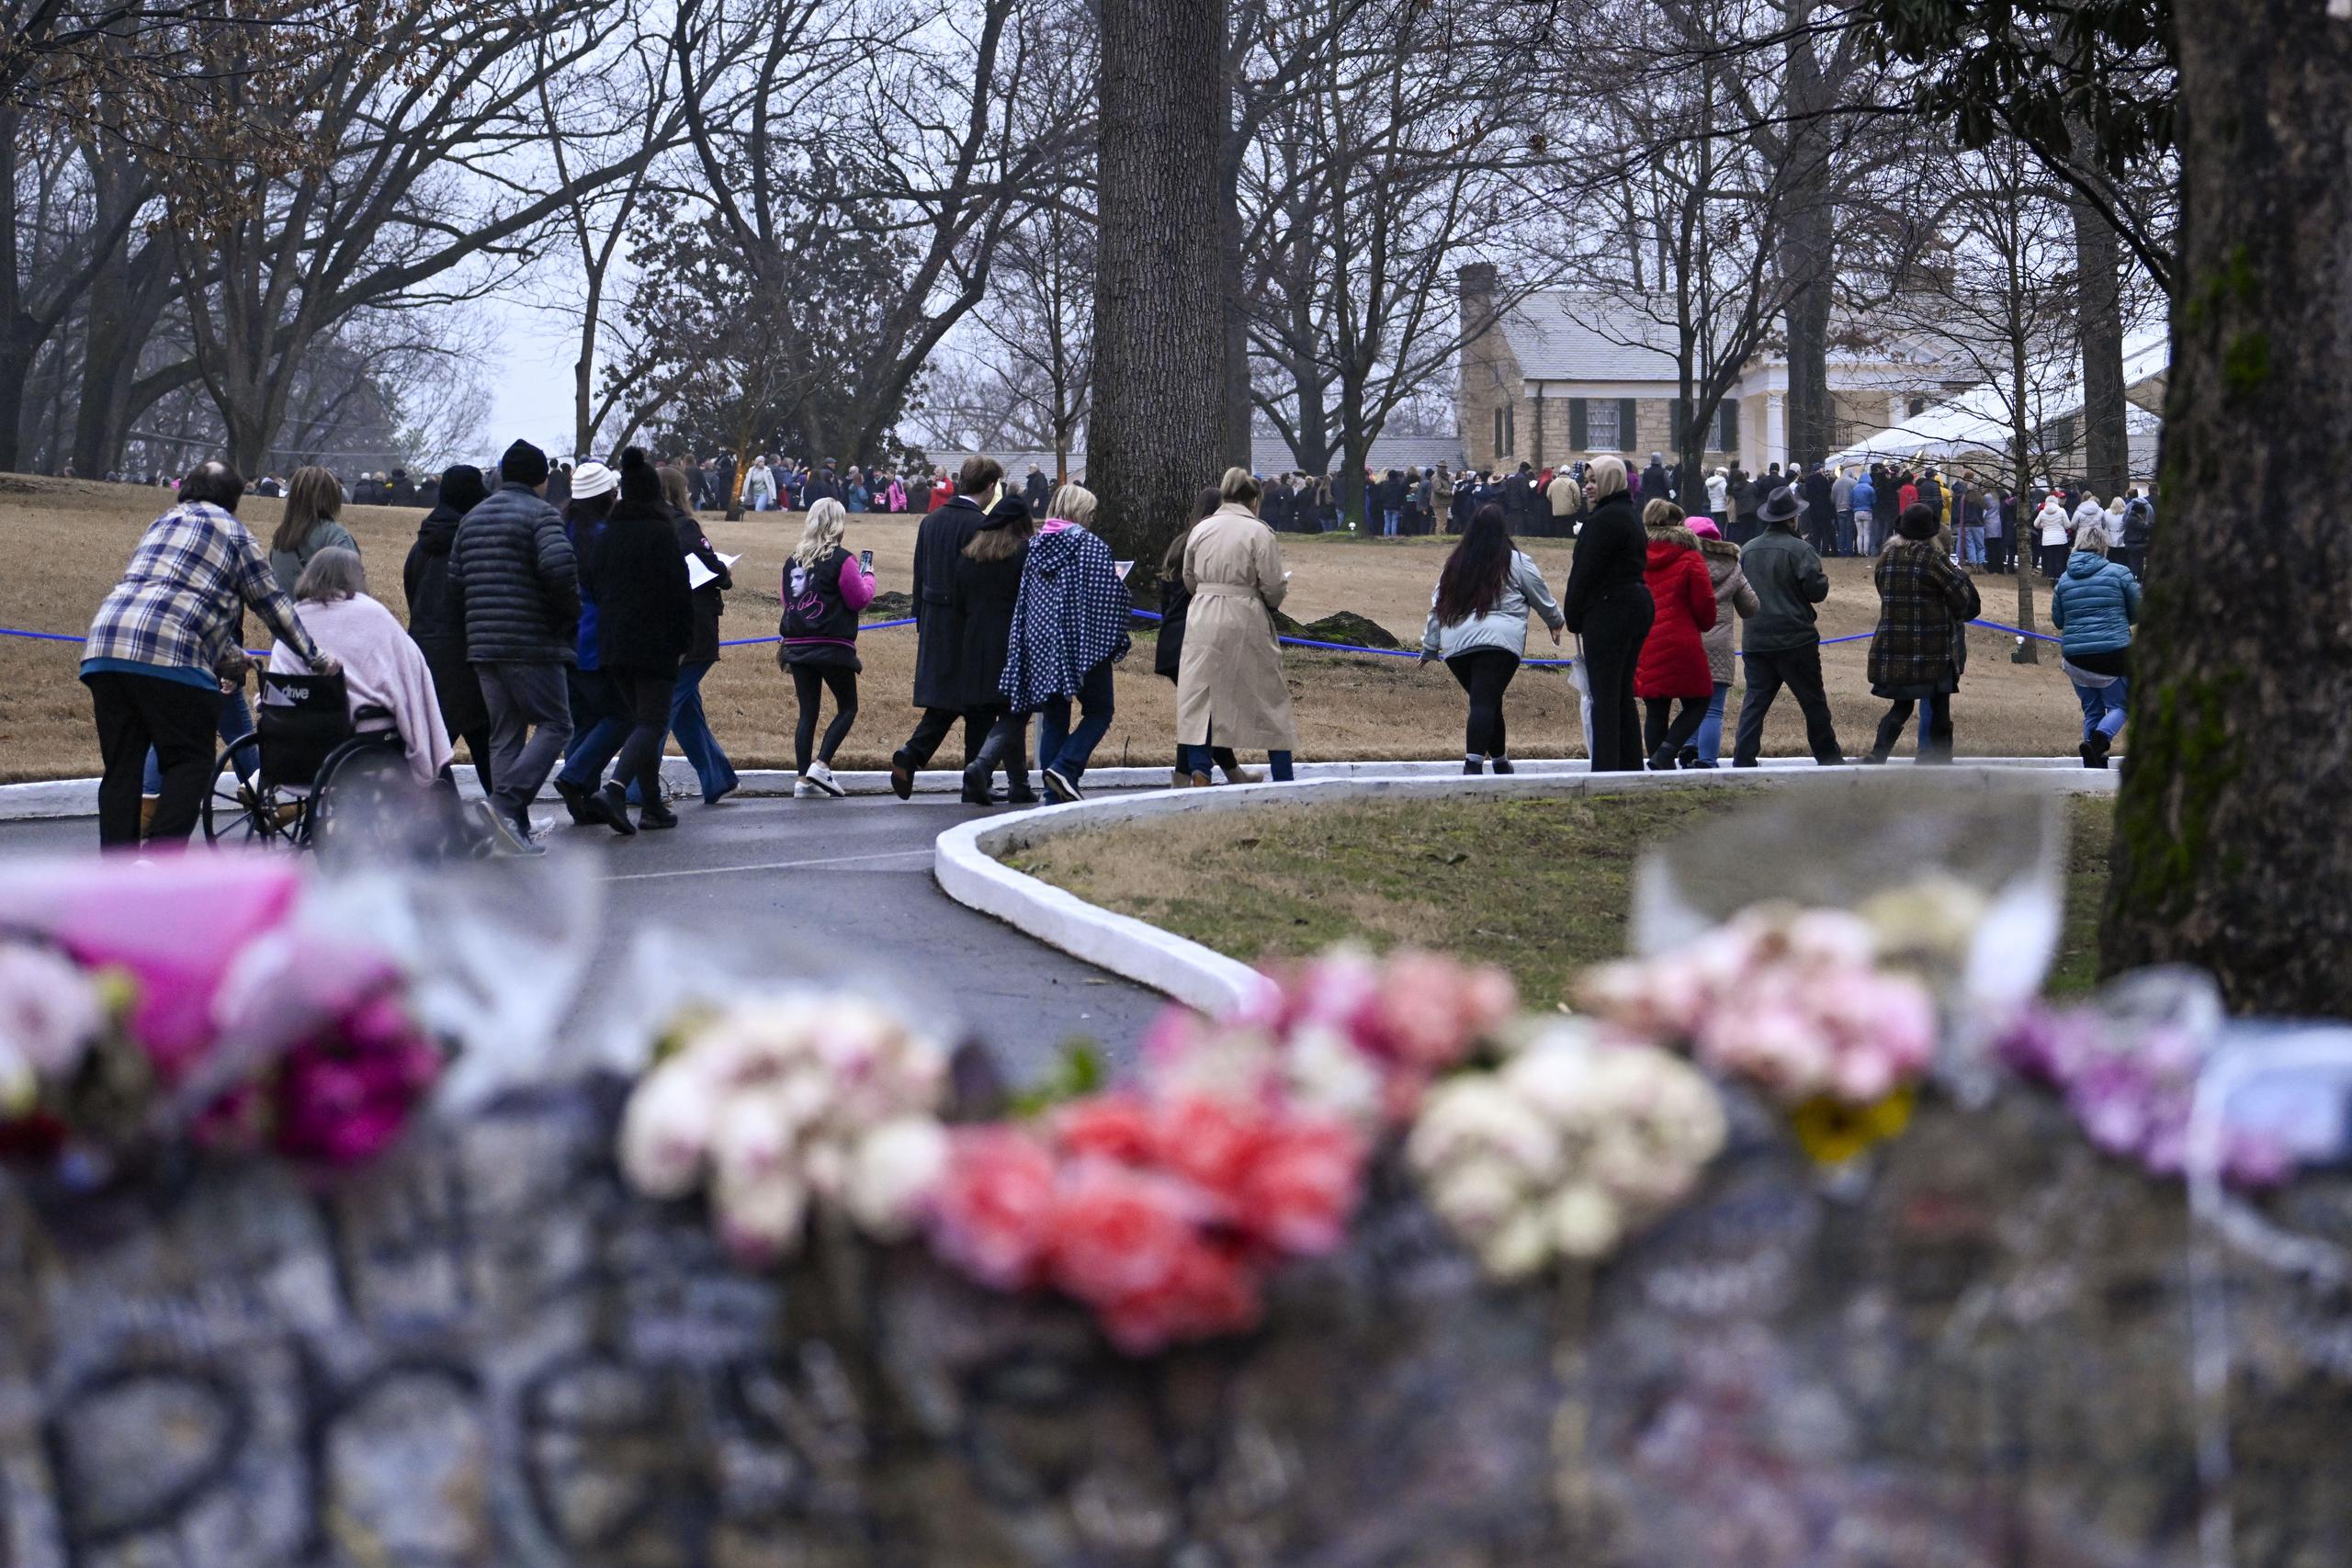 Varias personas llegan a Graceland para el funeral de Lisa Marie Presley el domingo 22 de enero de 2023, en Memphis, Tennessee. (AP Foto/John Amis)